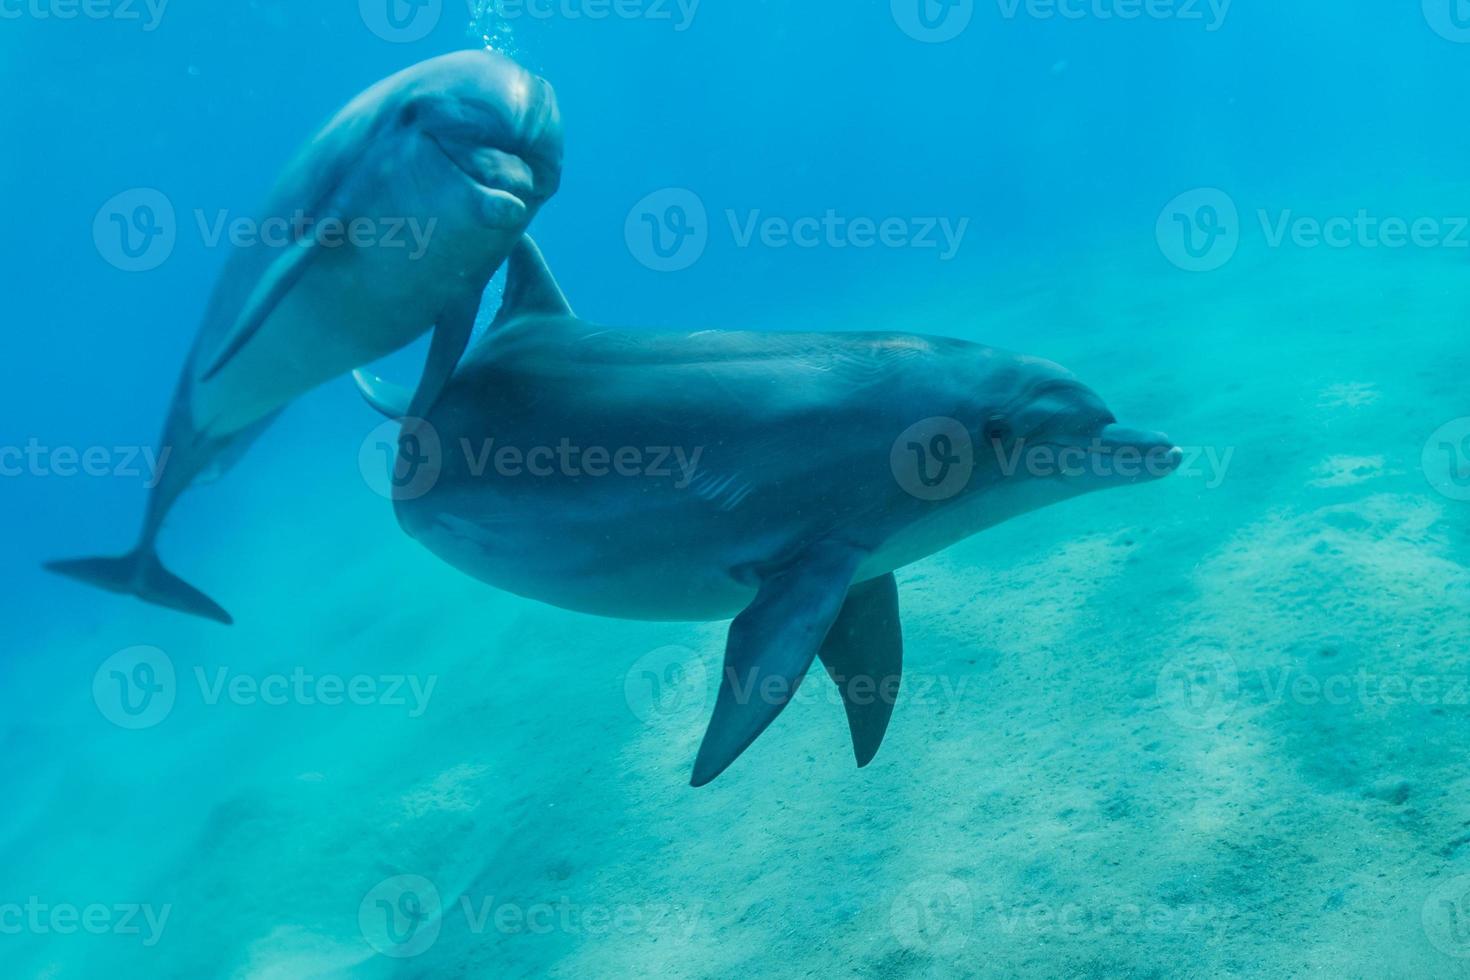 golfinhos nadando no mar vermelho, eilat israel foto